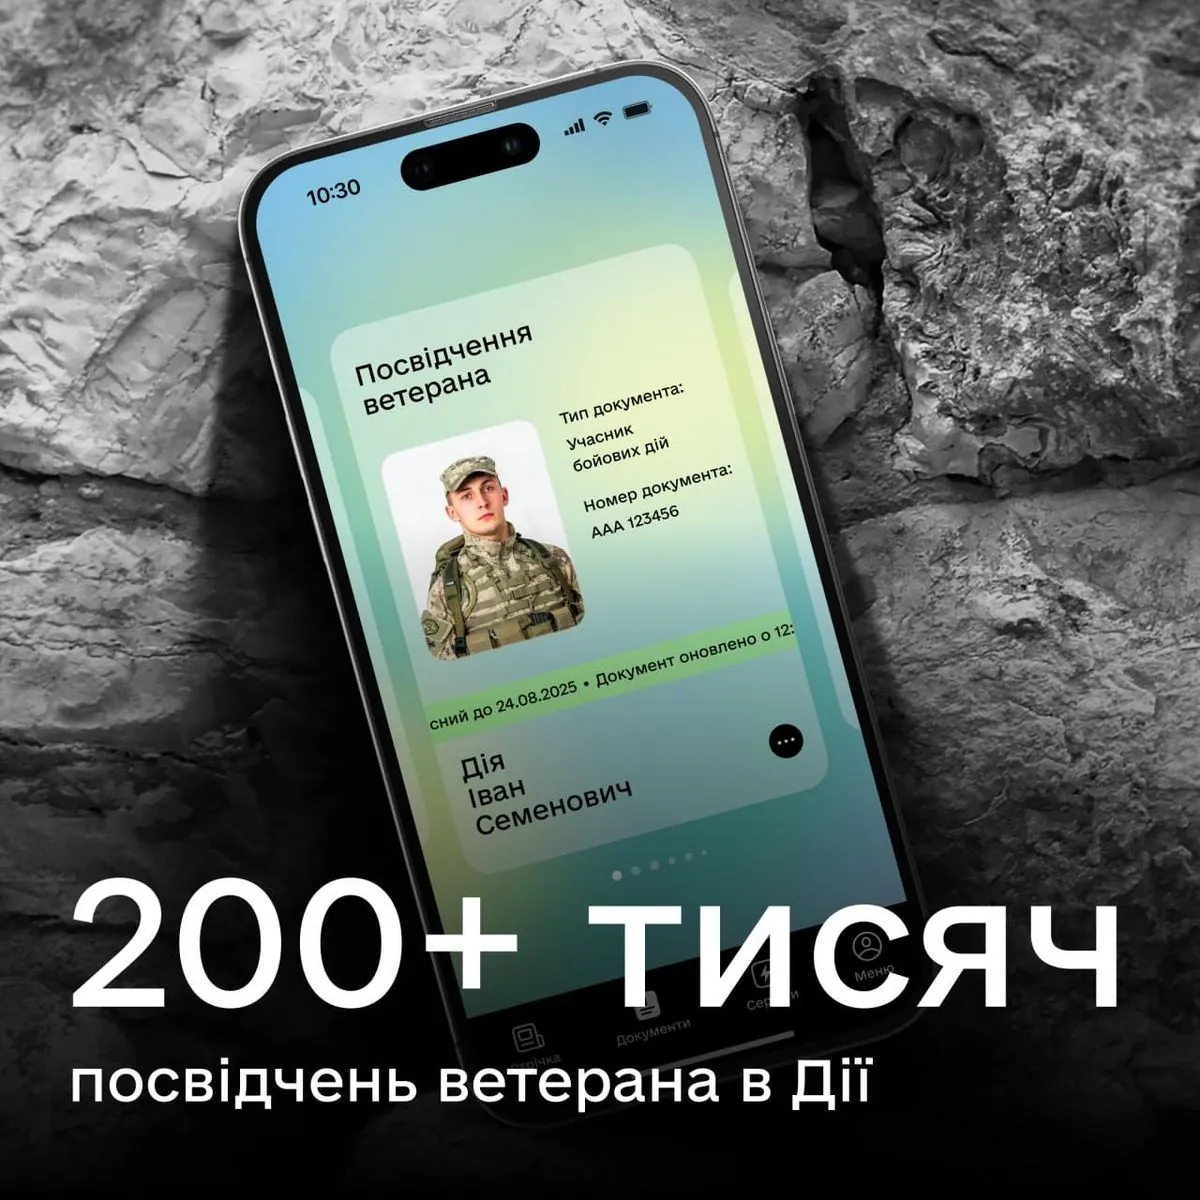 Украинцы сгенерировали 200+ тысяч удостоверений ветерана в Дии - Федоров